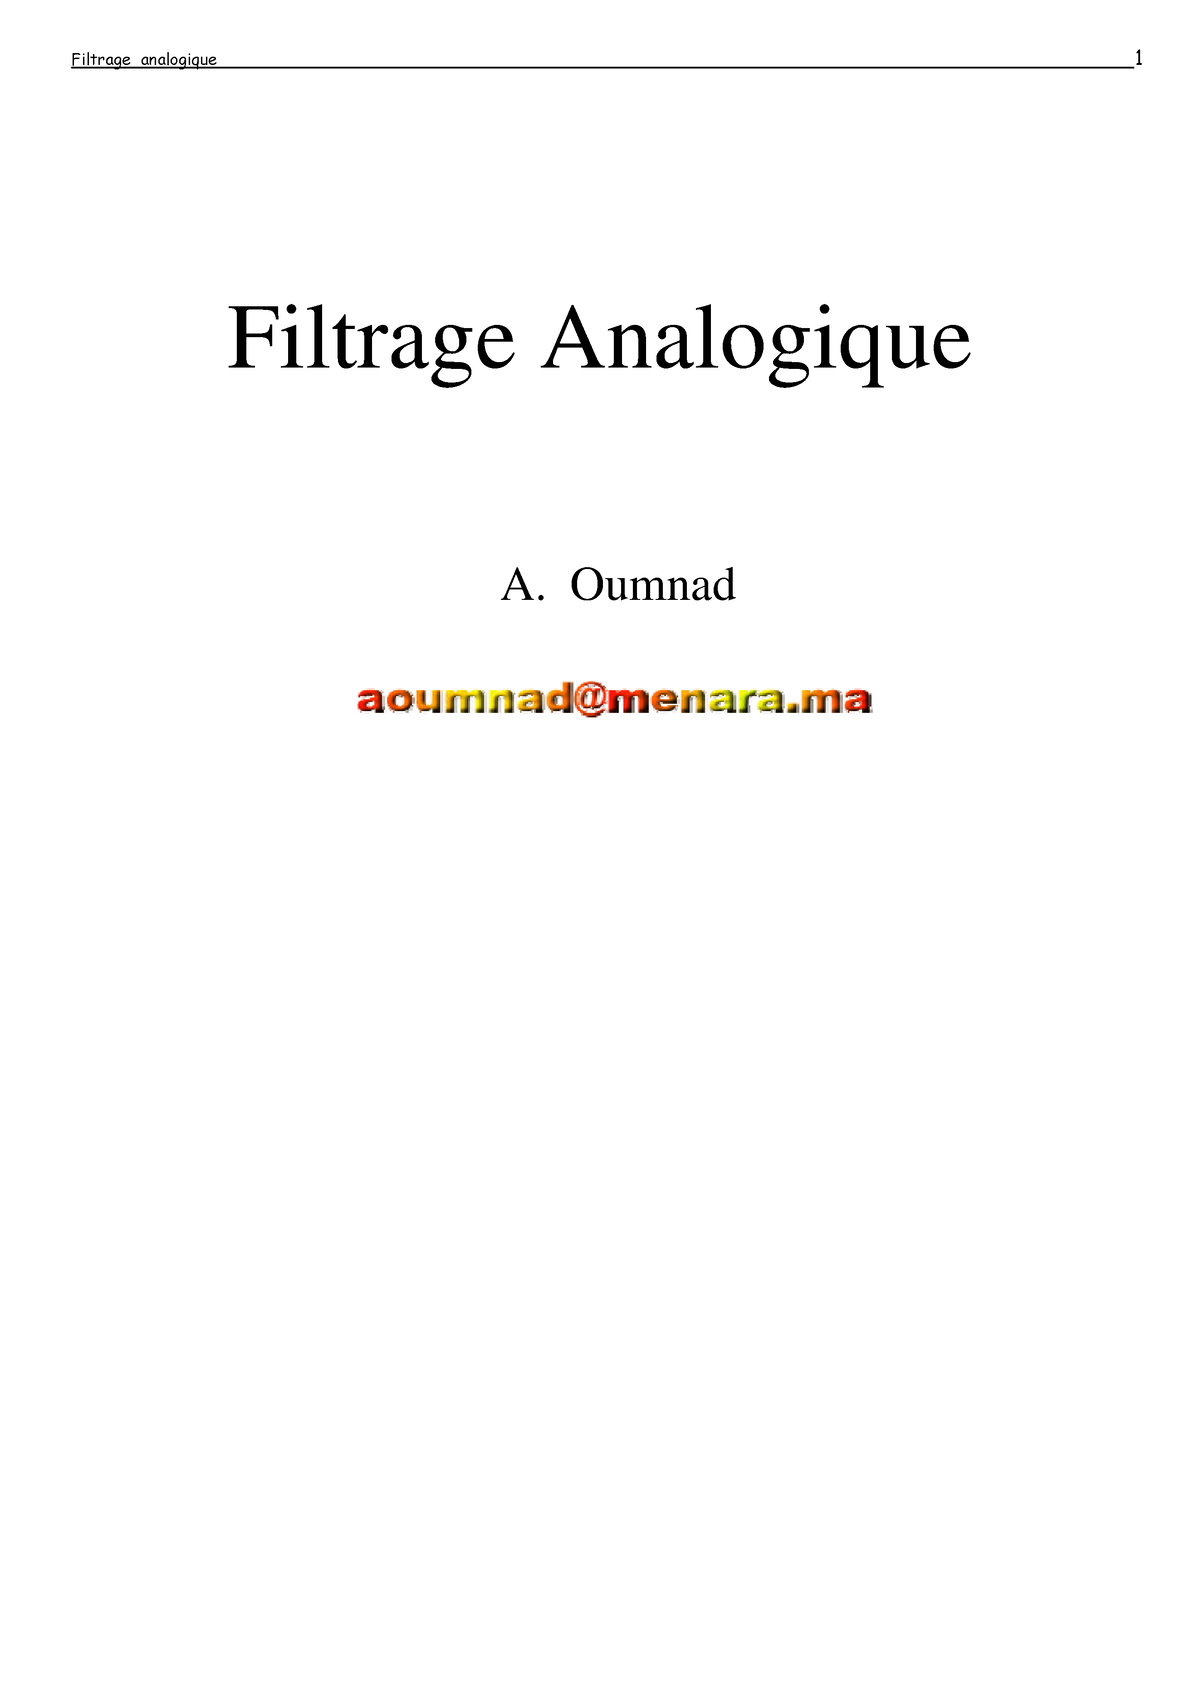 Filtrage-analogique - cours - Filtrage Analogique A. Oumnad